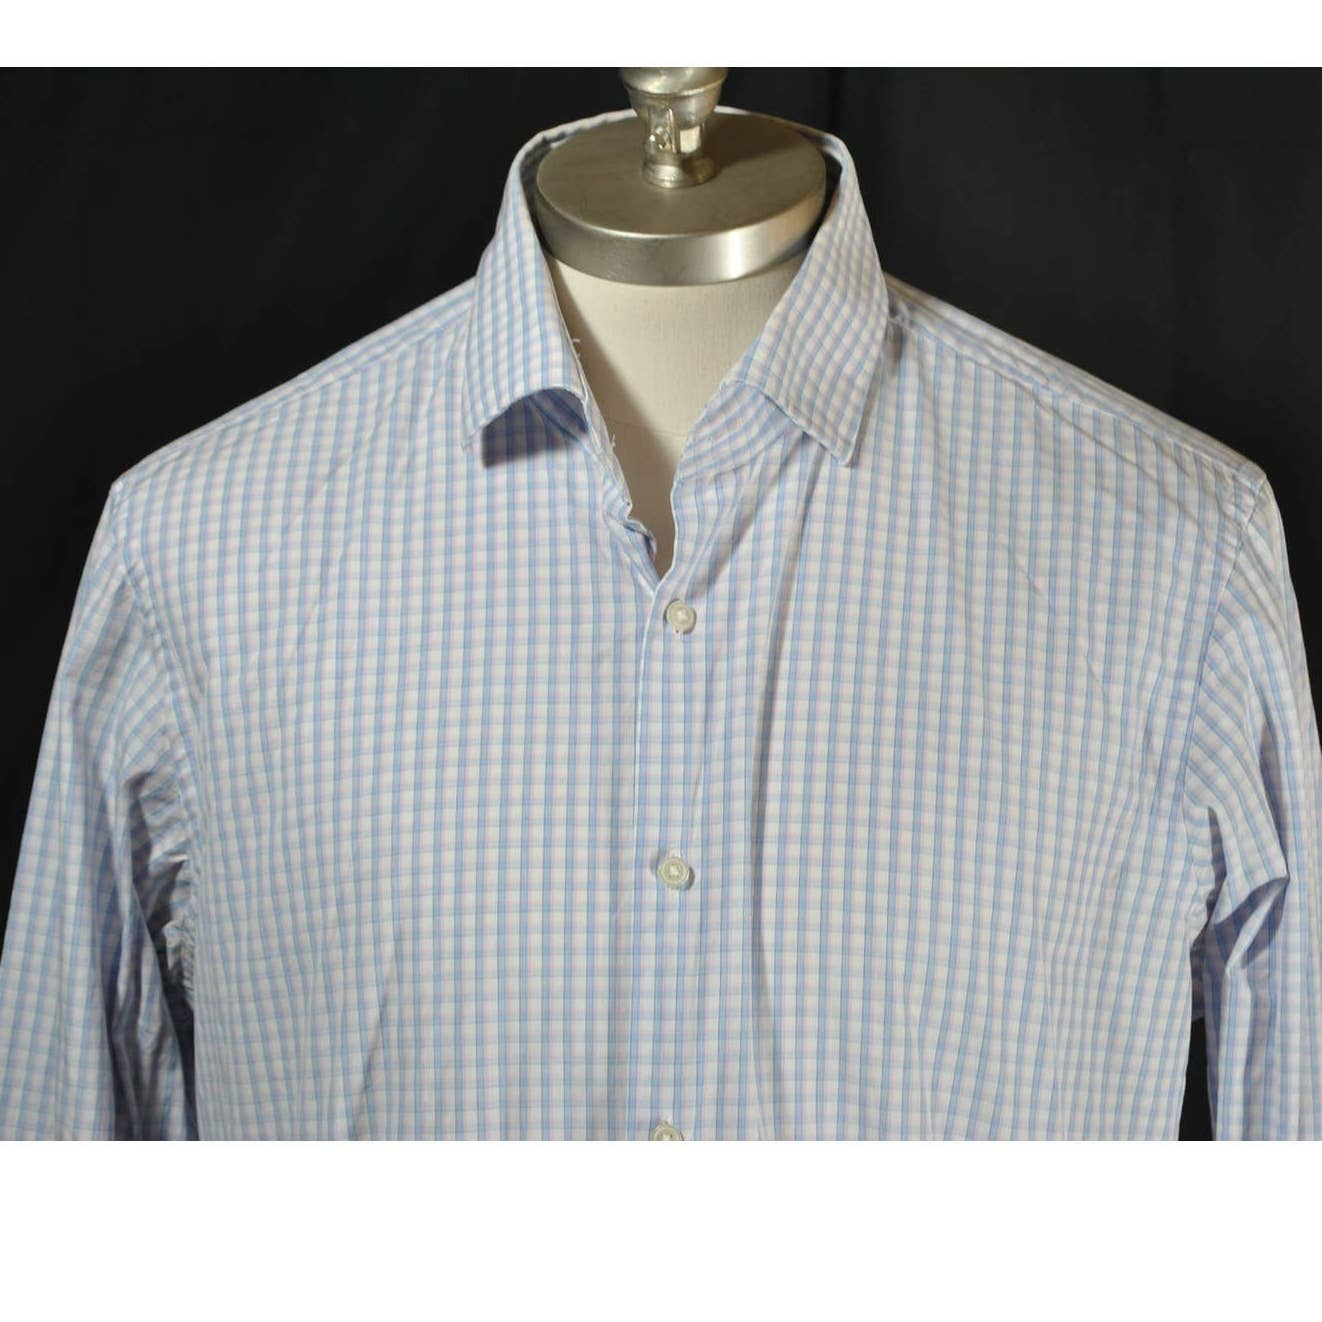 BOSS Hugo Boss White Blue Pink Check Button Up Shirt - 16.5 34/35